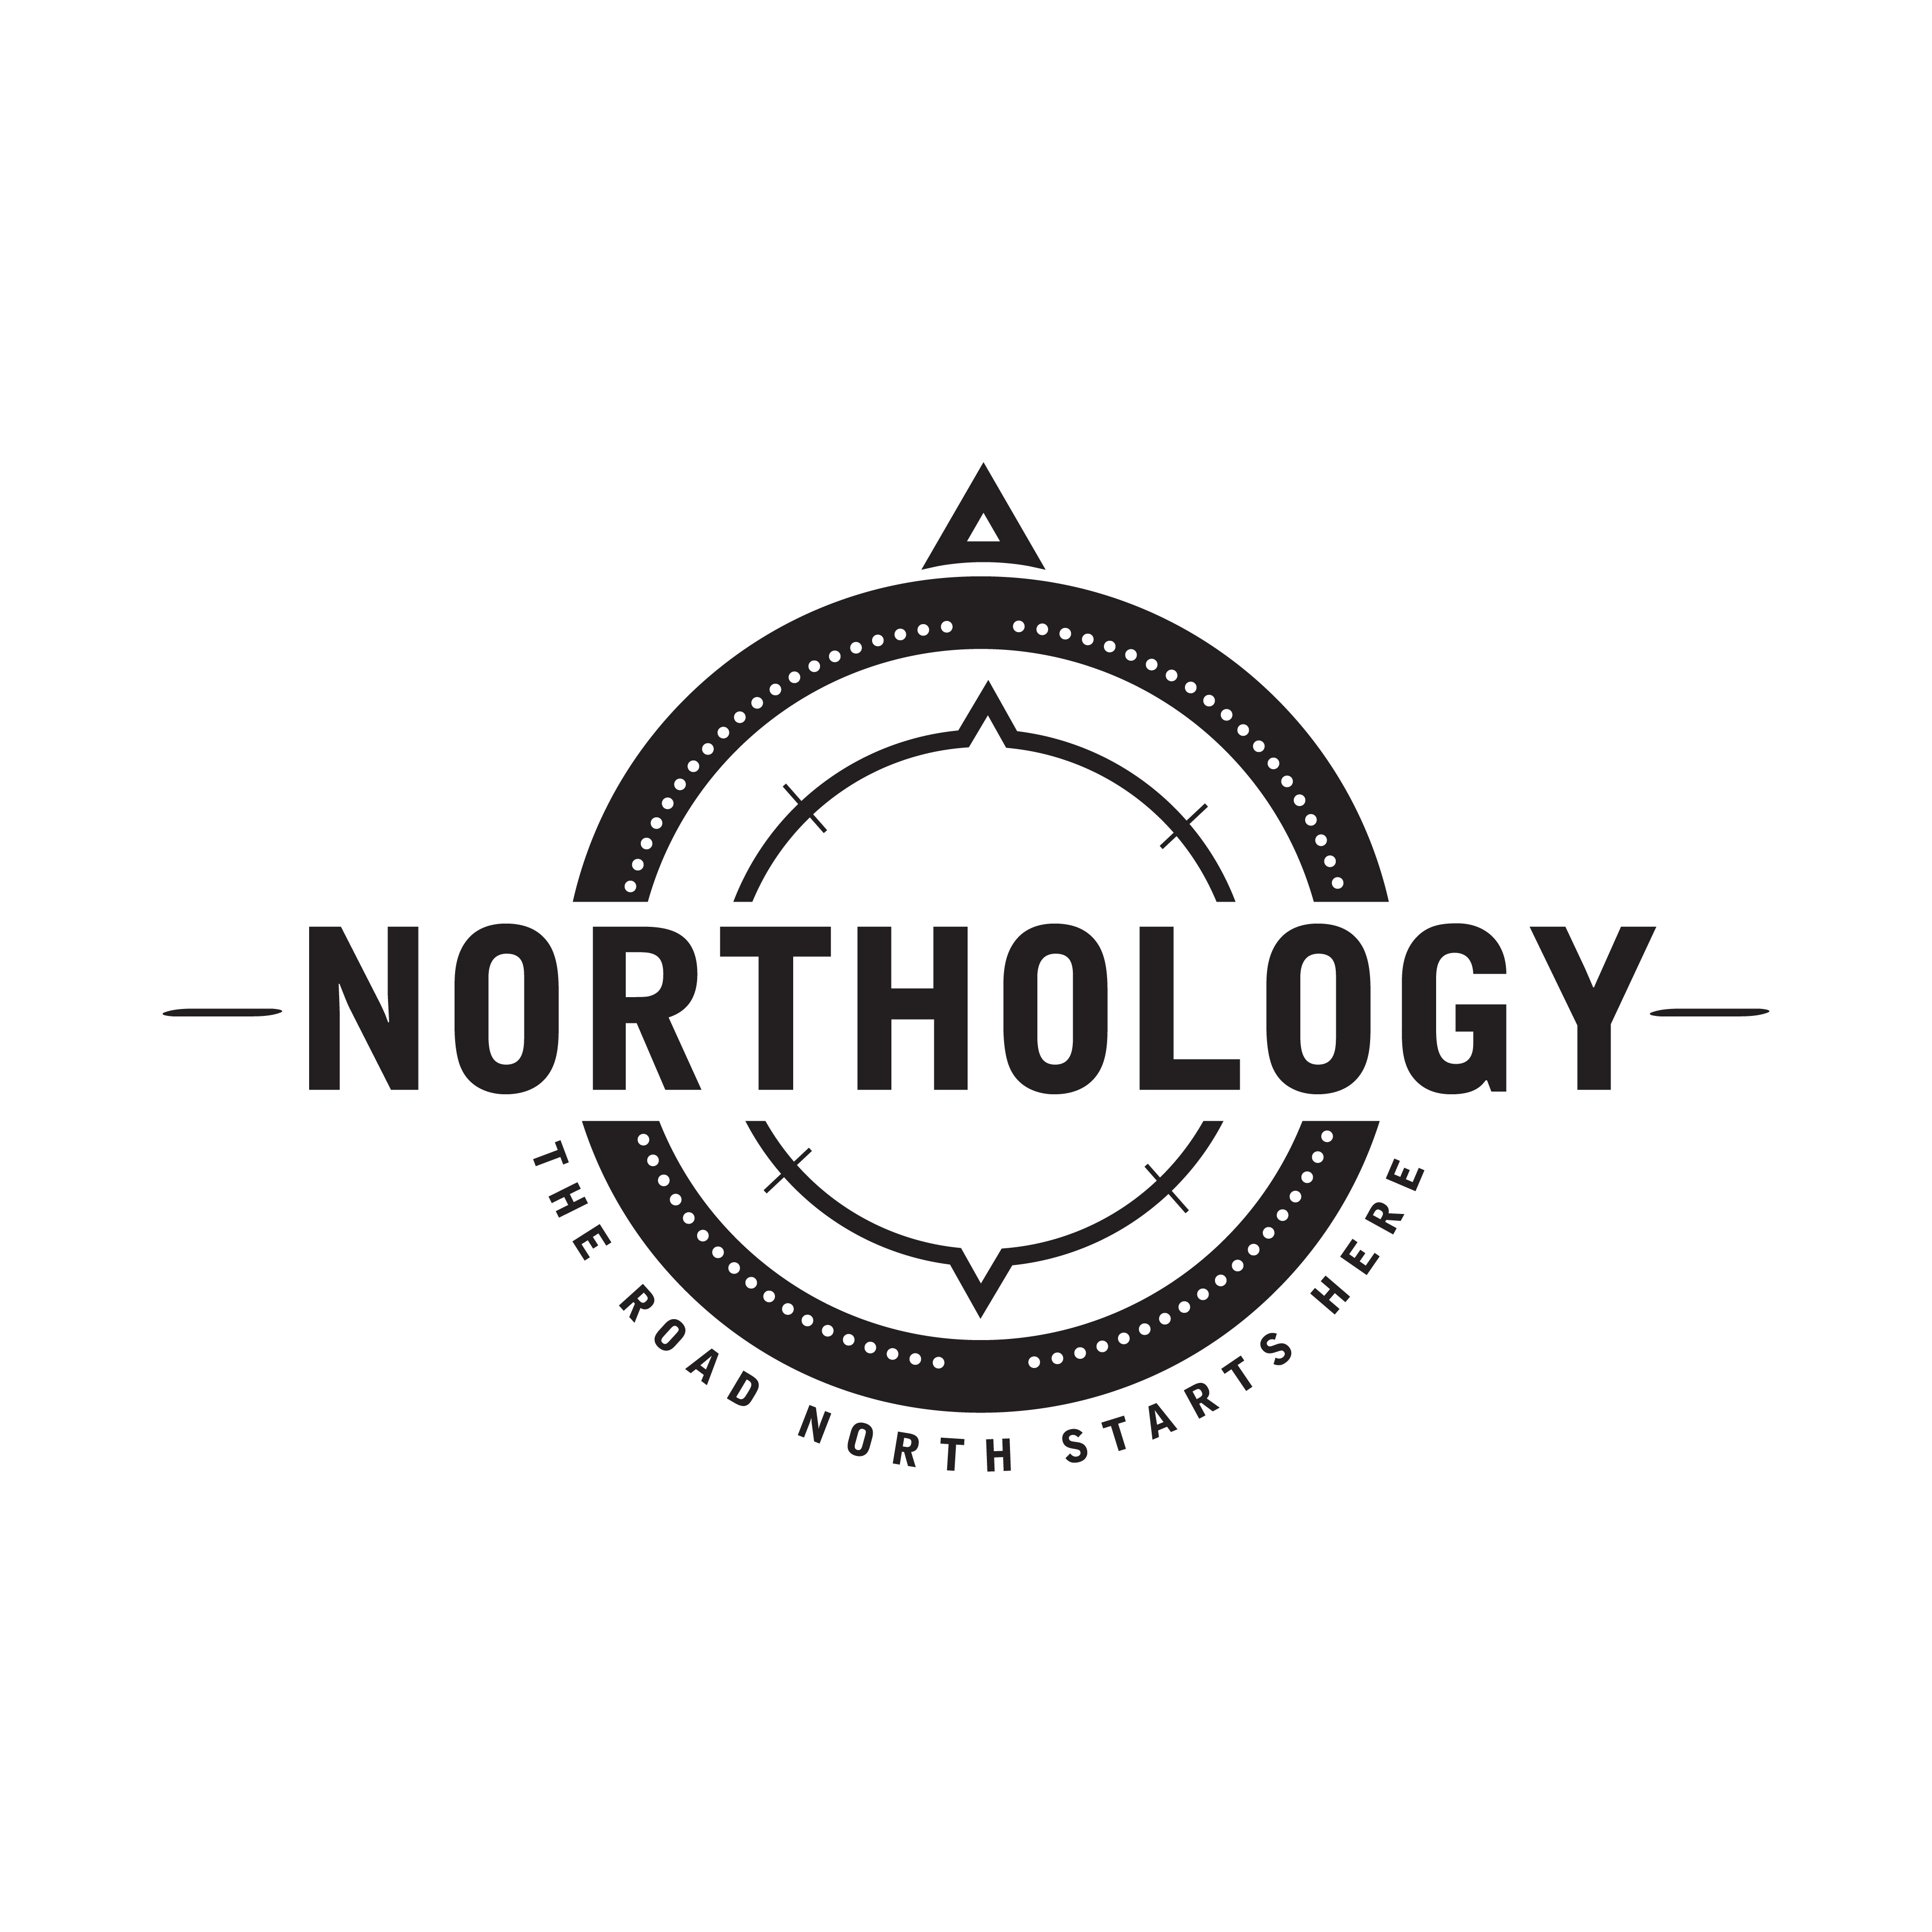 Northology Magazine